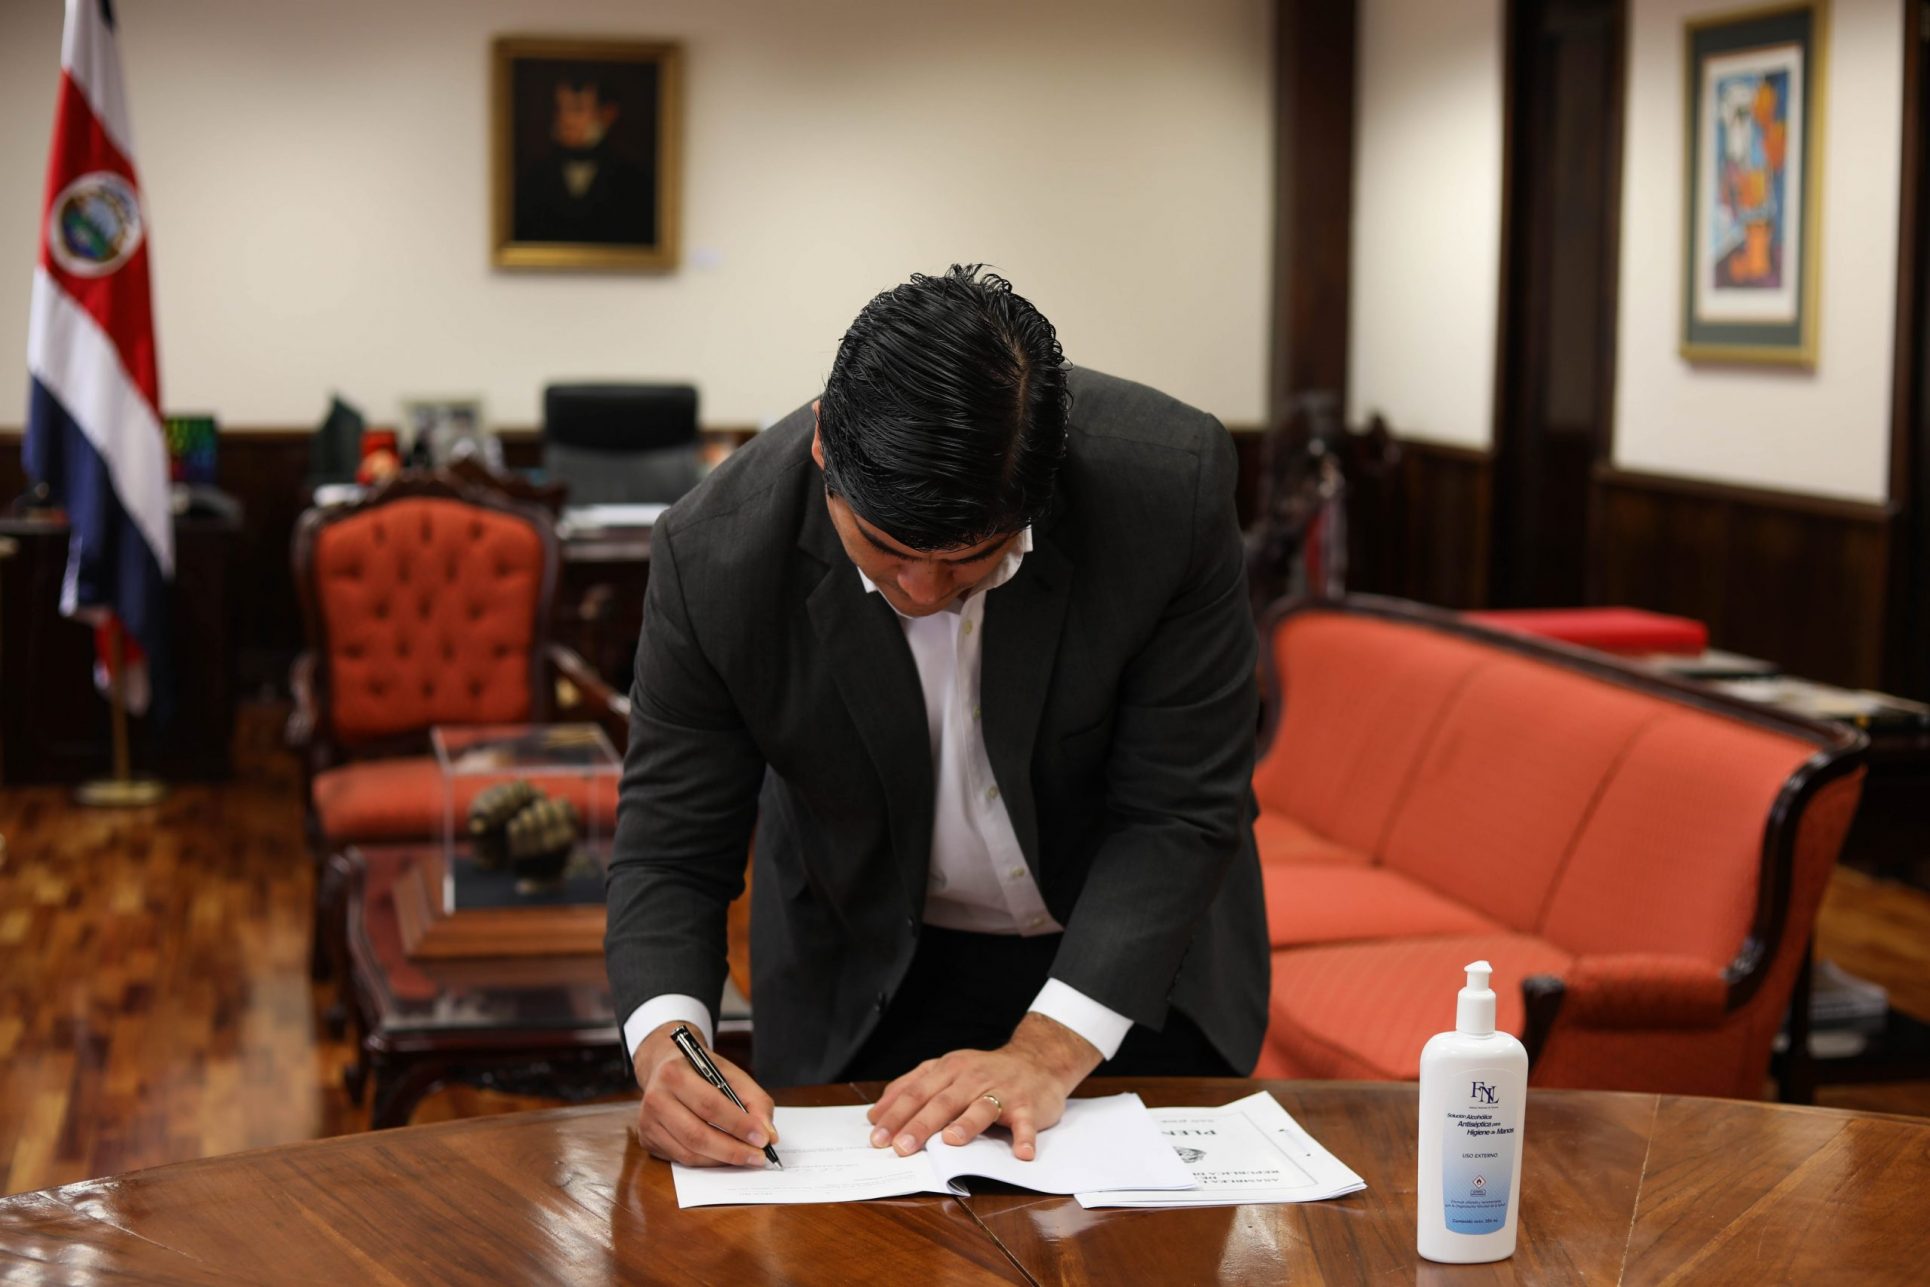 Solo horas después de aprobadas, Carlos Alvarado firma leyes de reducción de jornadas laborales y datáfonos